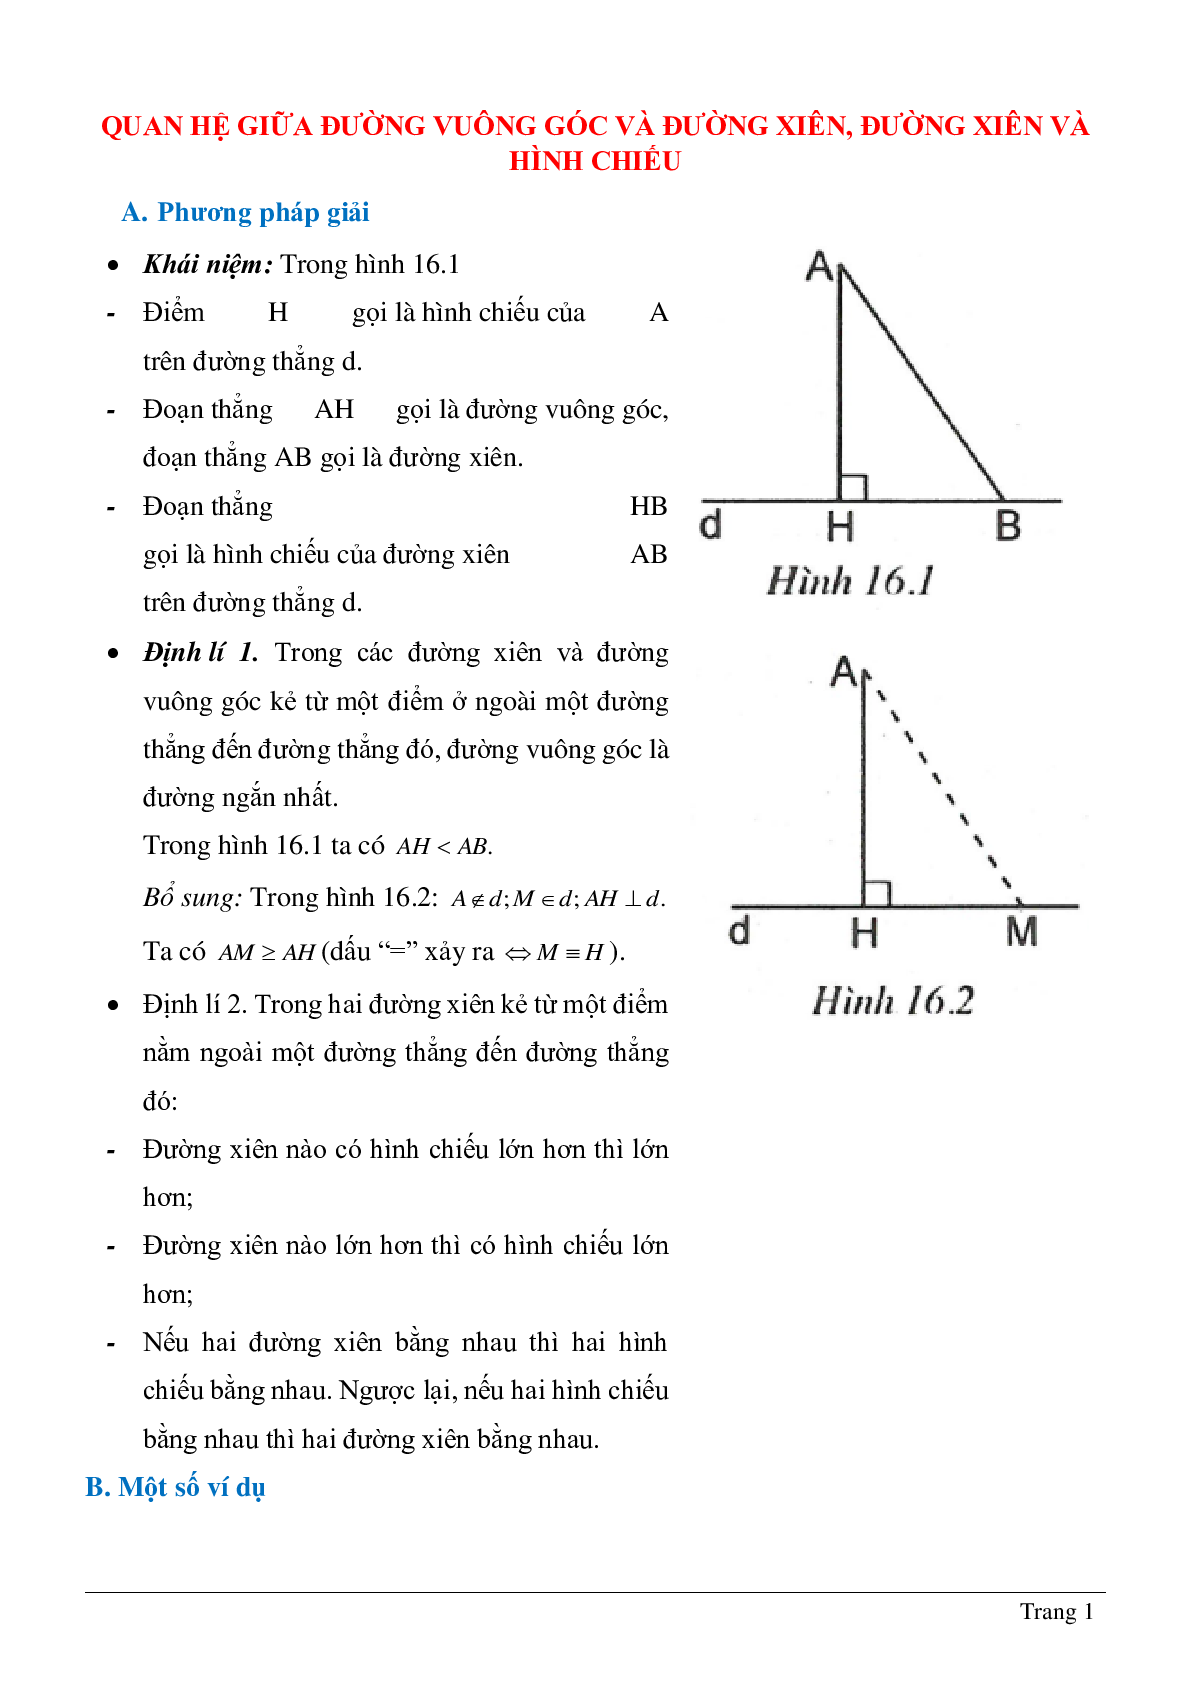 Tổng hợp kiến thức về Quan hệ giữa đường vuông góc và đường xiên, đường xiên và hình chiếu của đường xiên chọn lọc (trang 1)